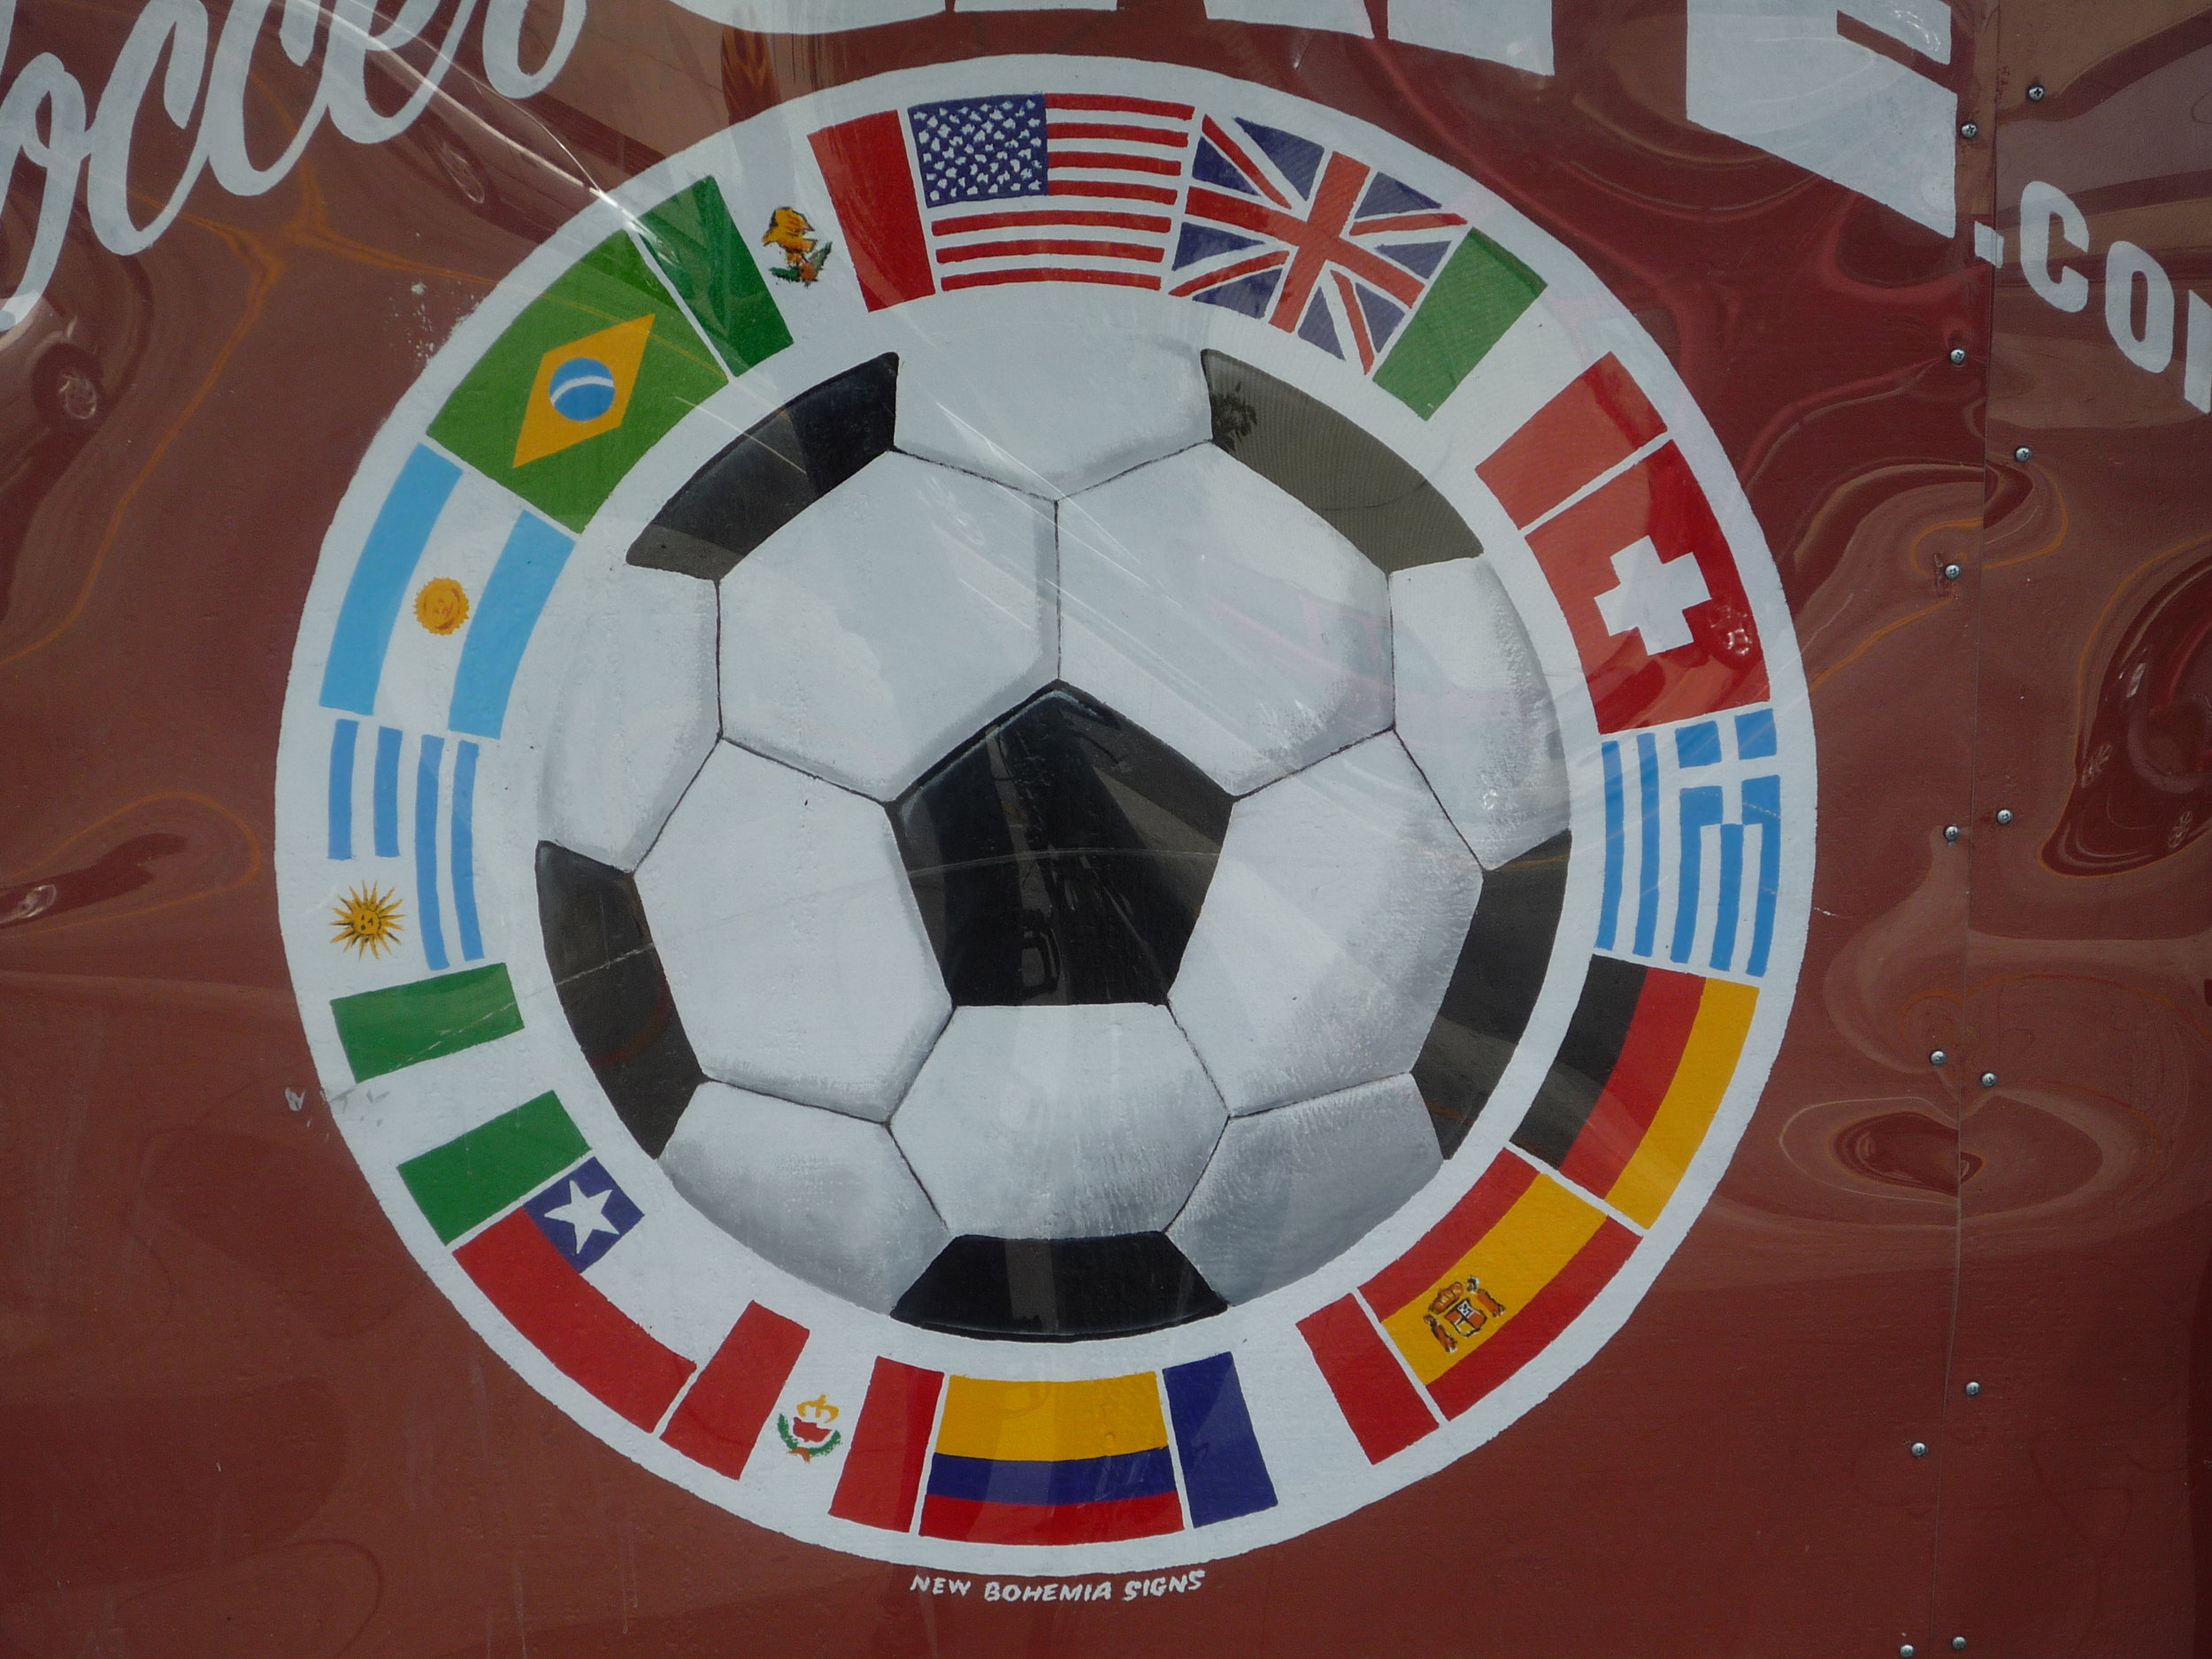 ORIG-soccer-cafe-ball-and-flag-detail_4306537635_o.jpg